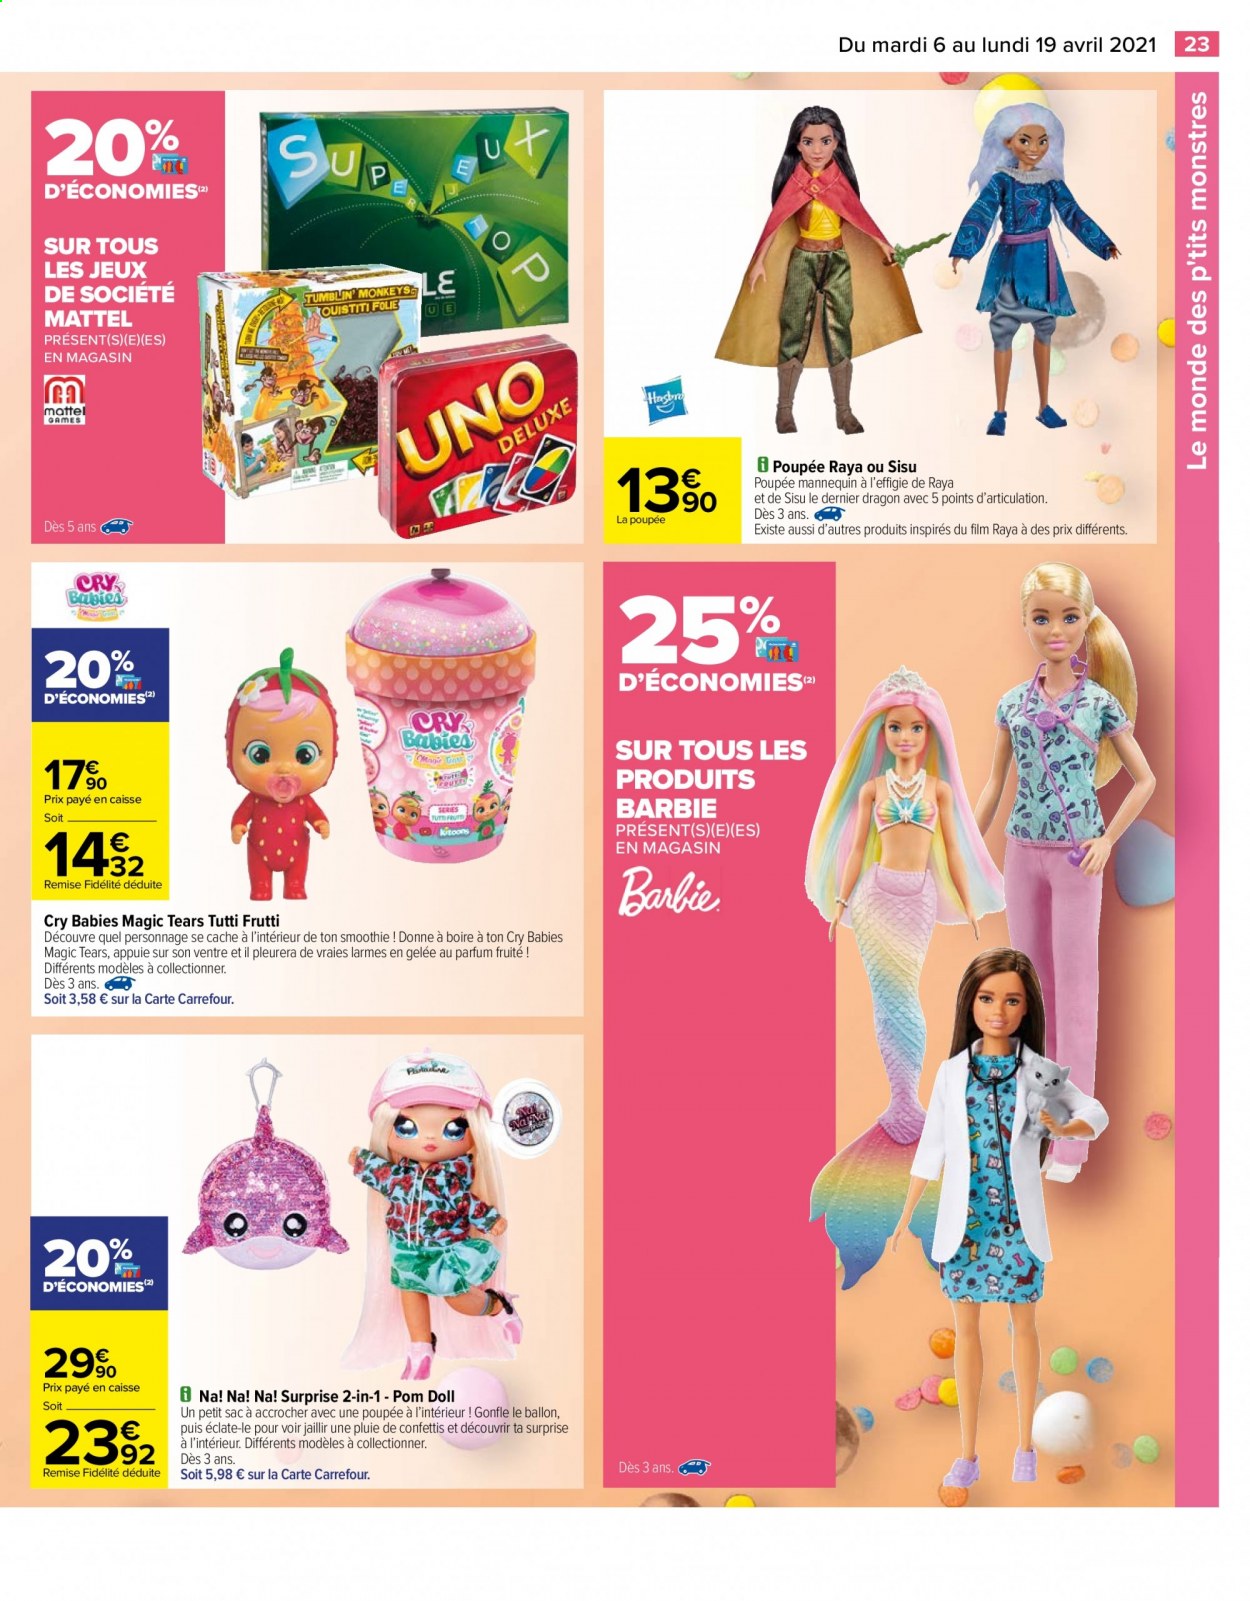 thumbnail - Catalogue Carrefour Hypermarchés - 06/04/2021 - 19/04/2021 - Produits soldés - Barbie, smoothie, dragon, poupée. Page 5.